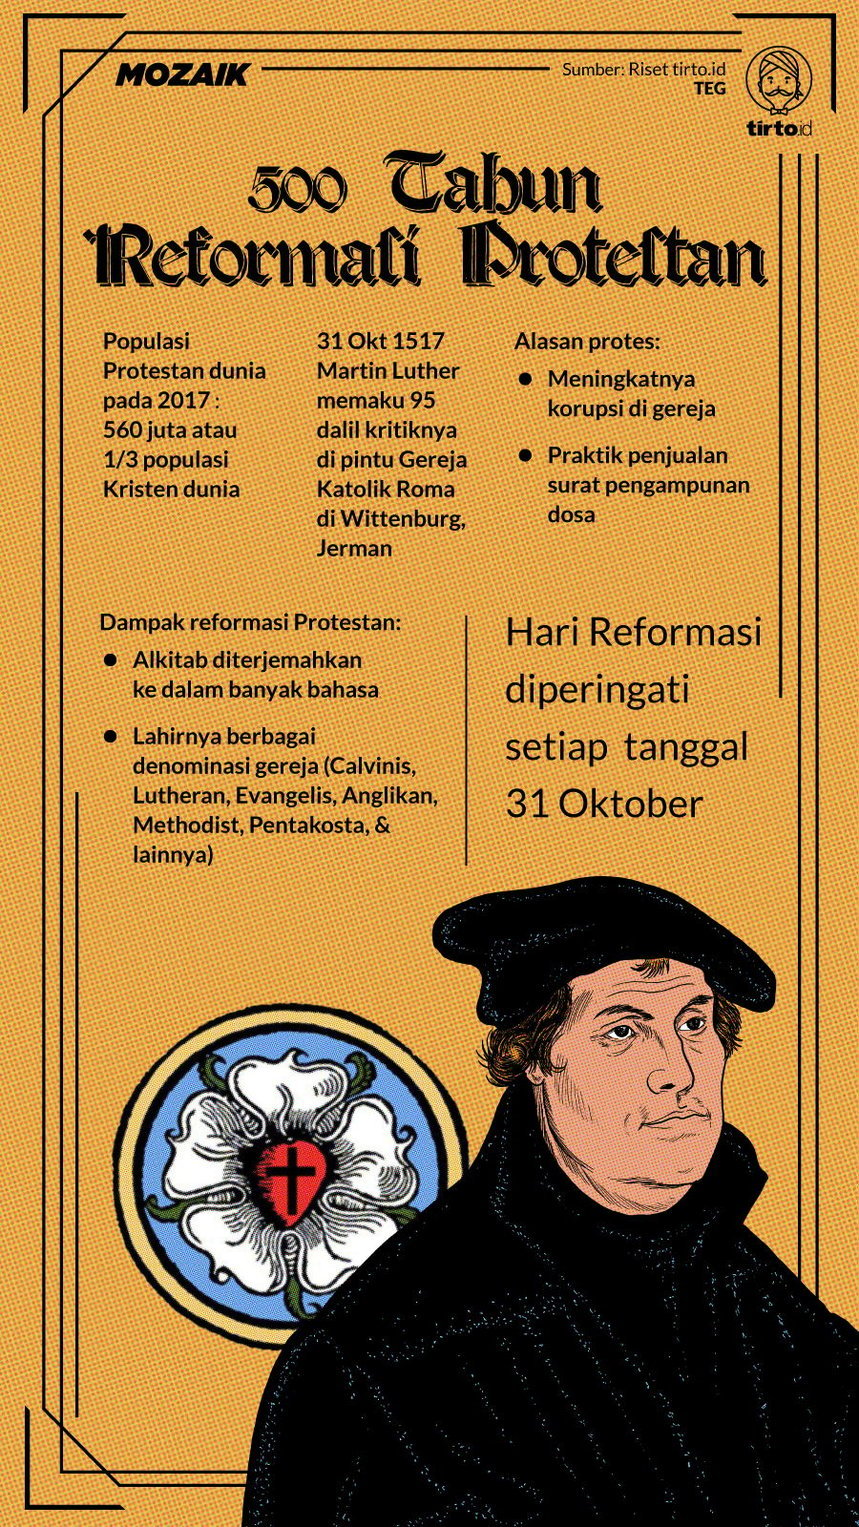 Infografik Mozaik Martin Luther